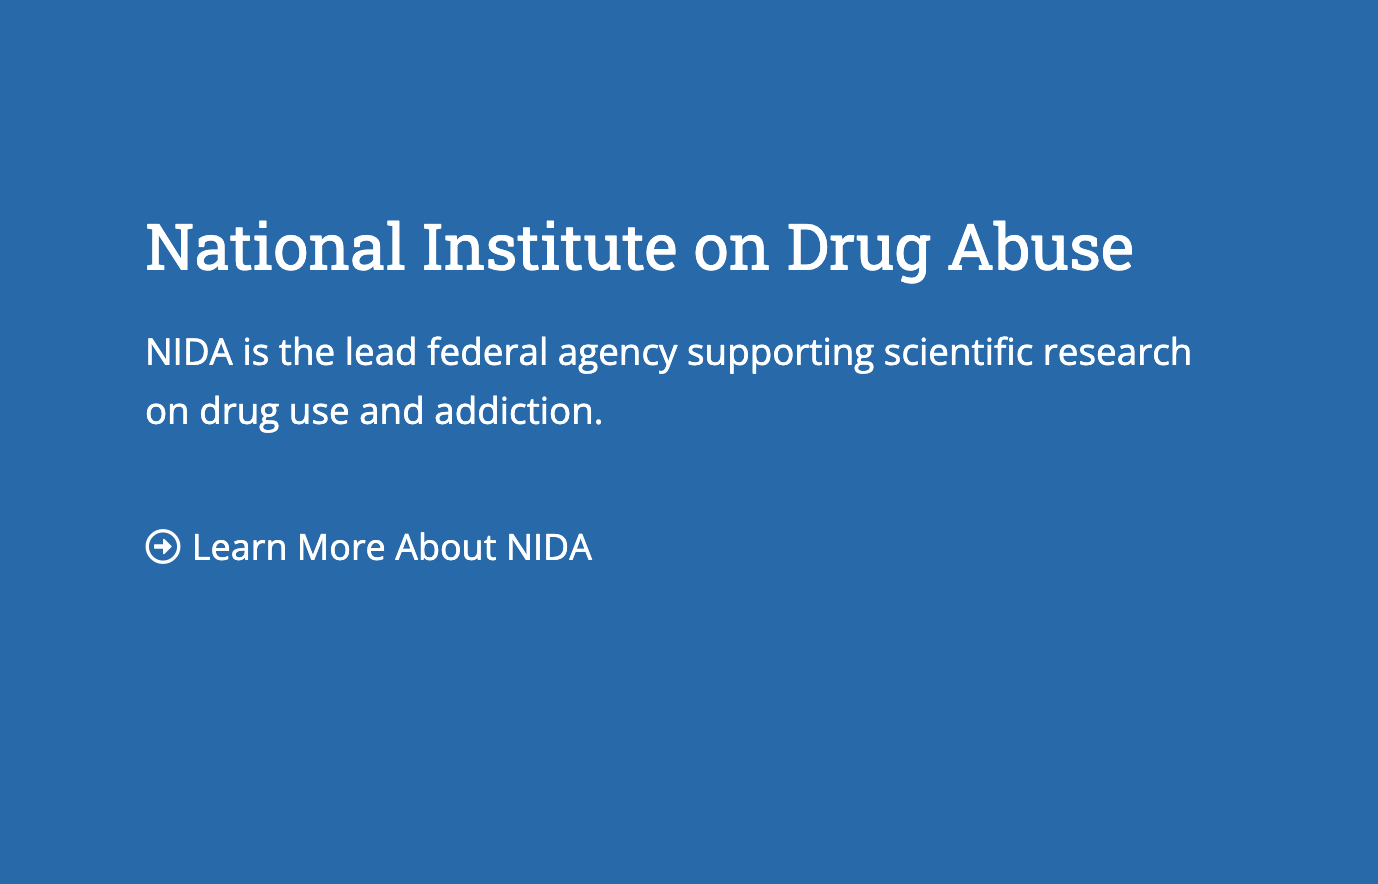 National Institute on Drug Abuse description